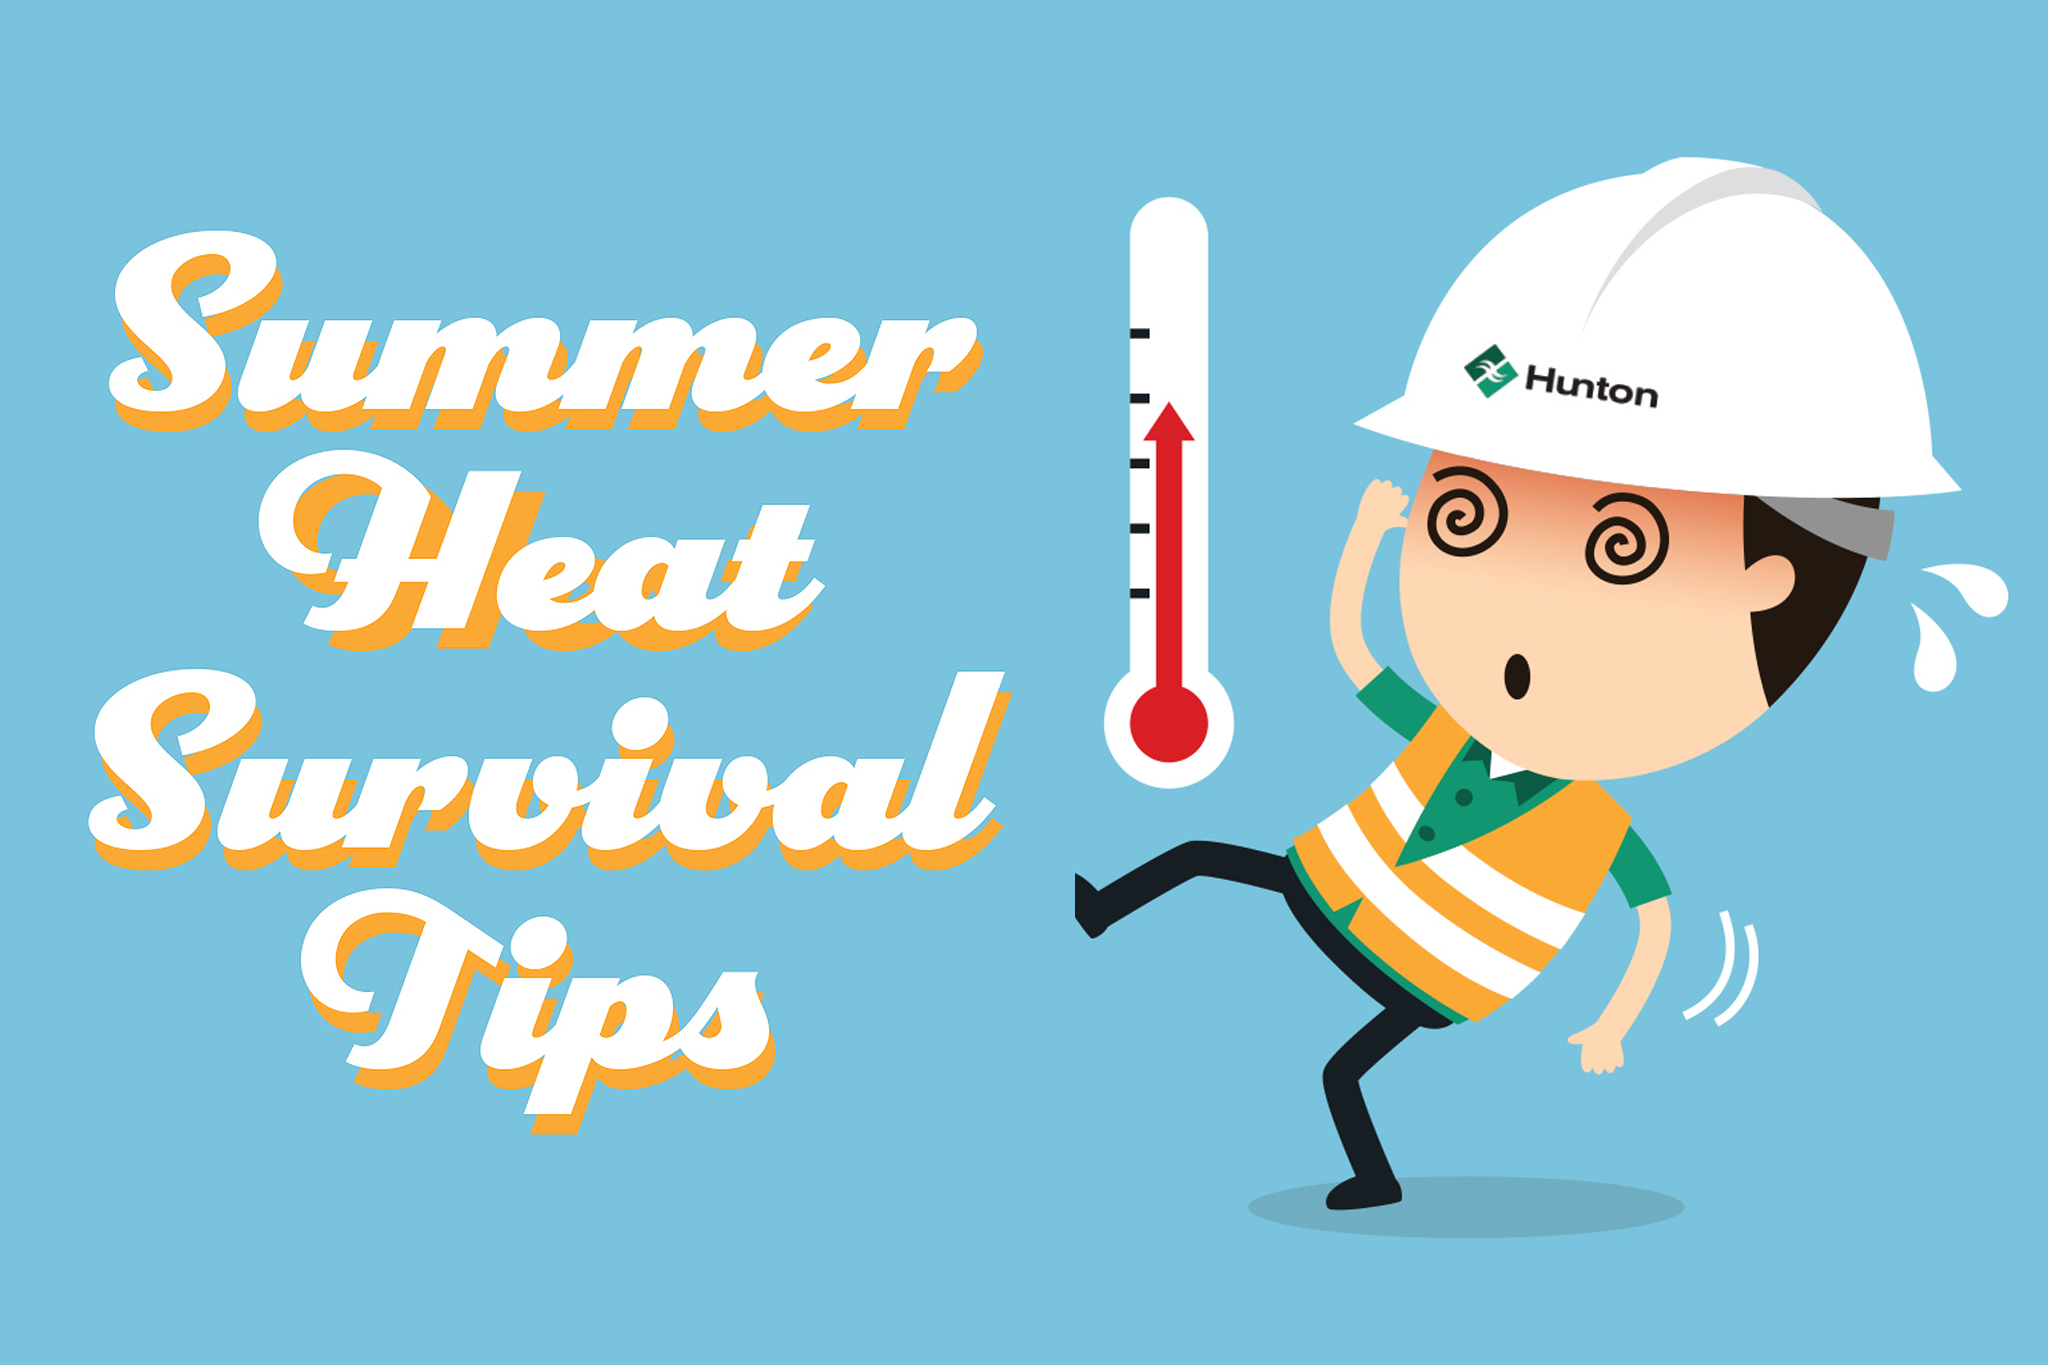 Summer Heat Survival tips